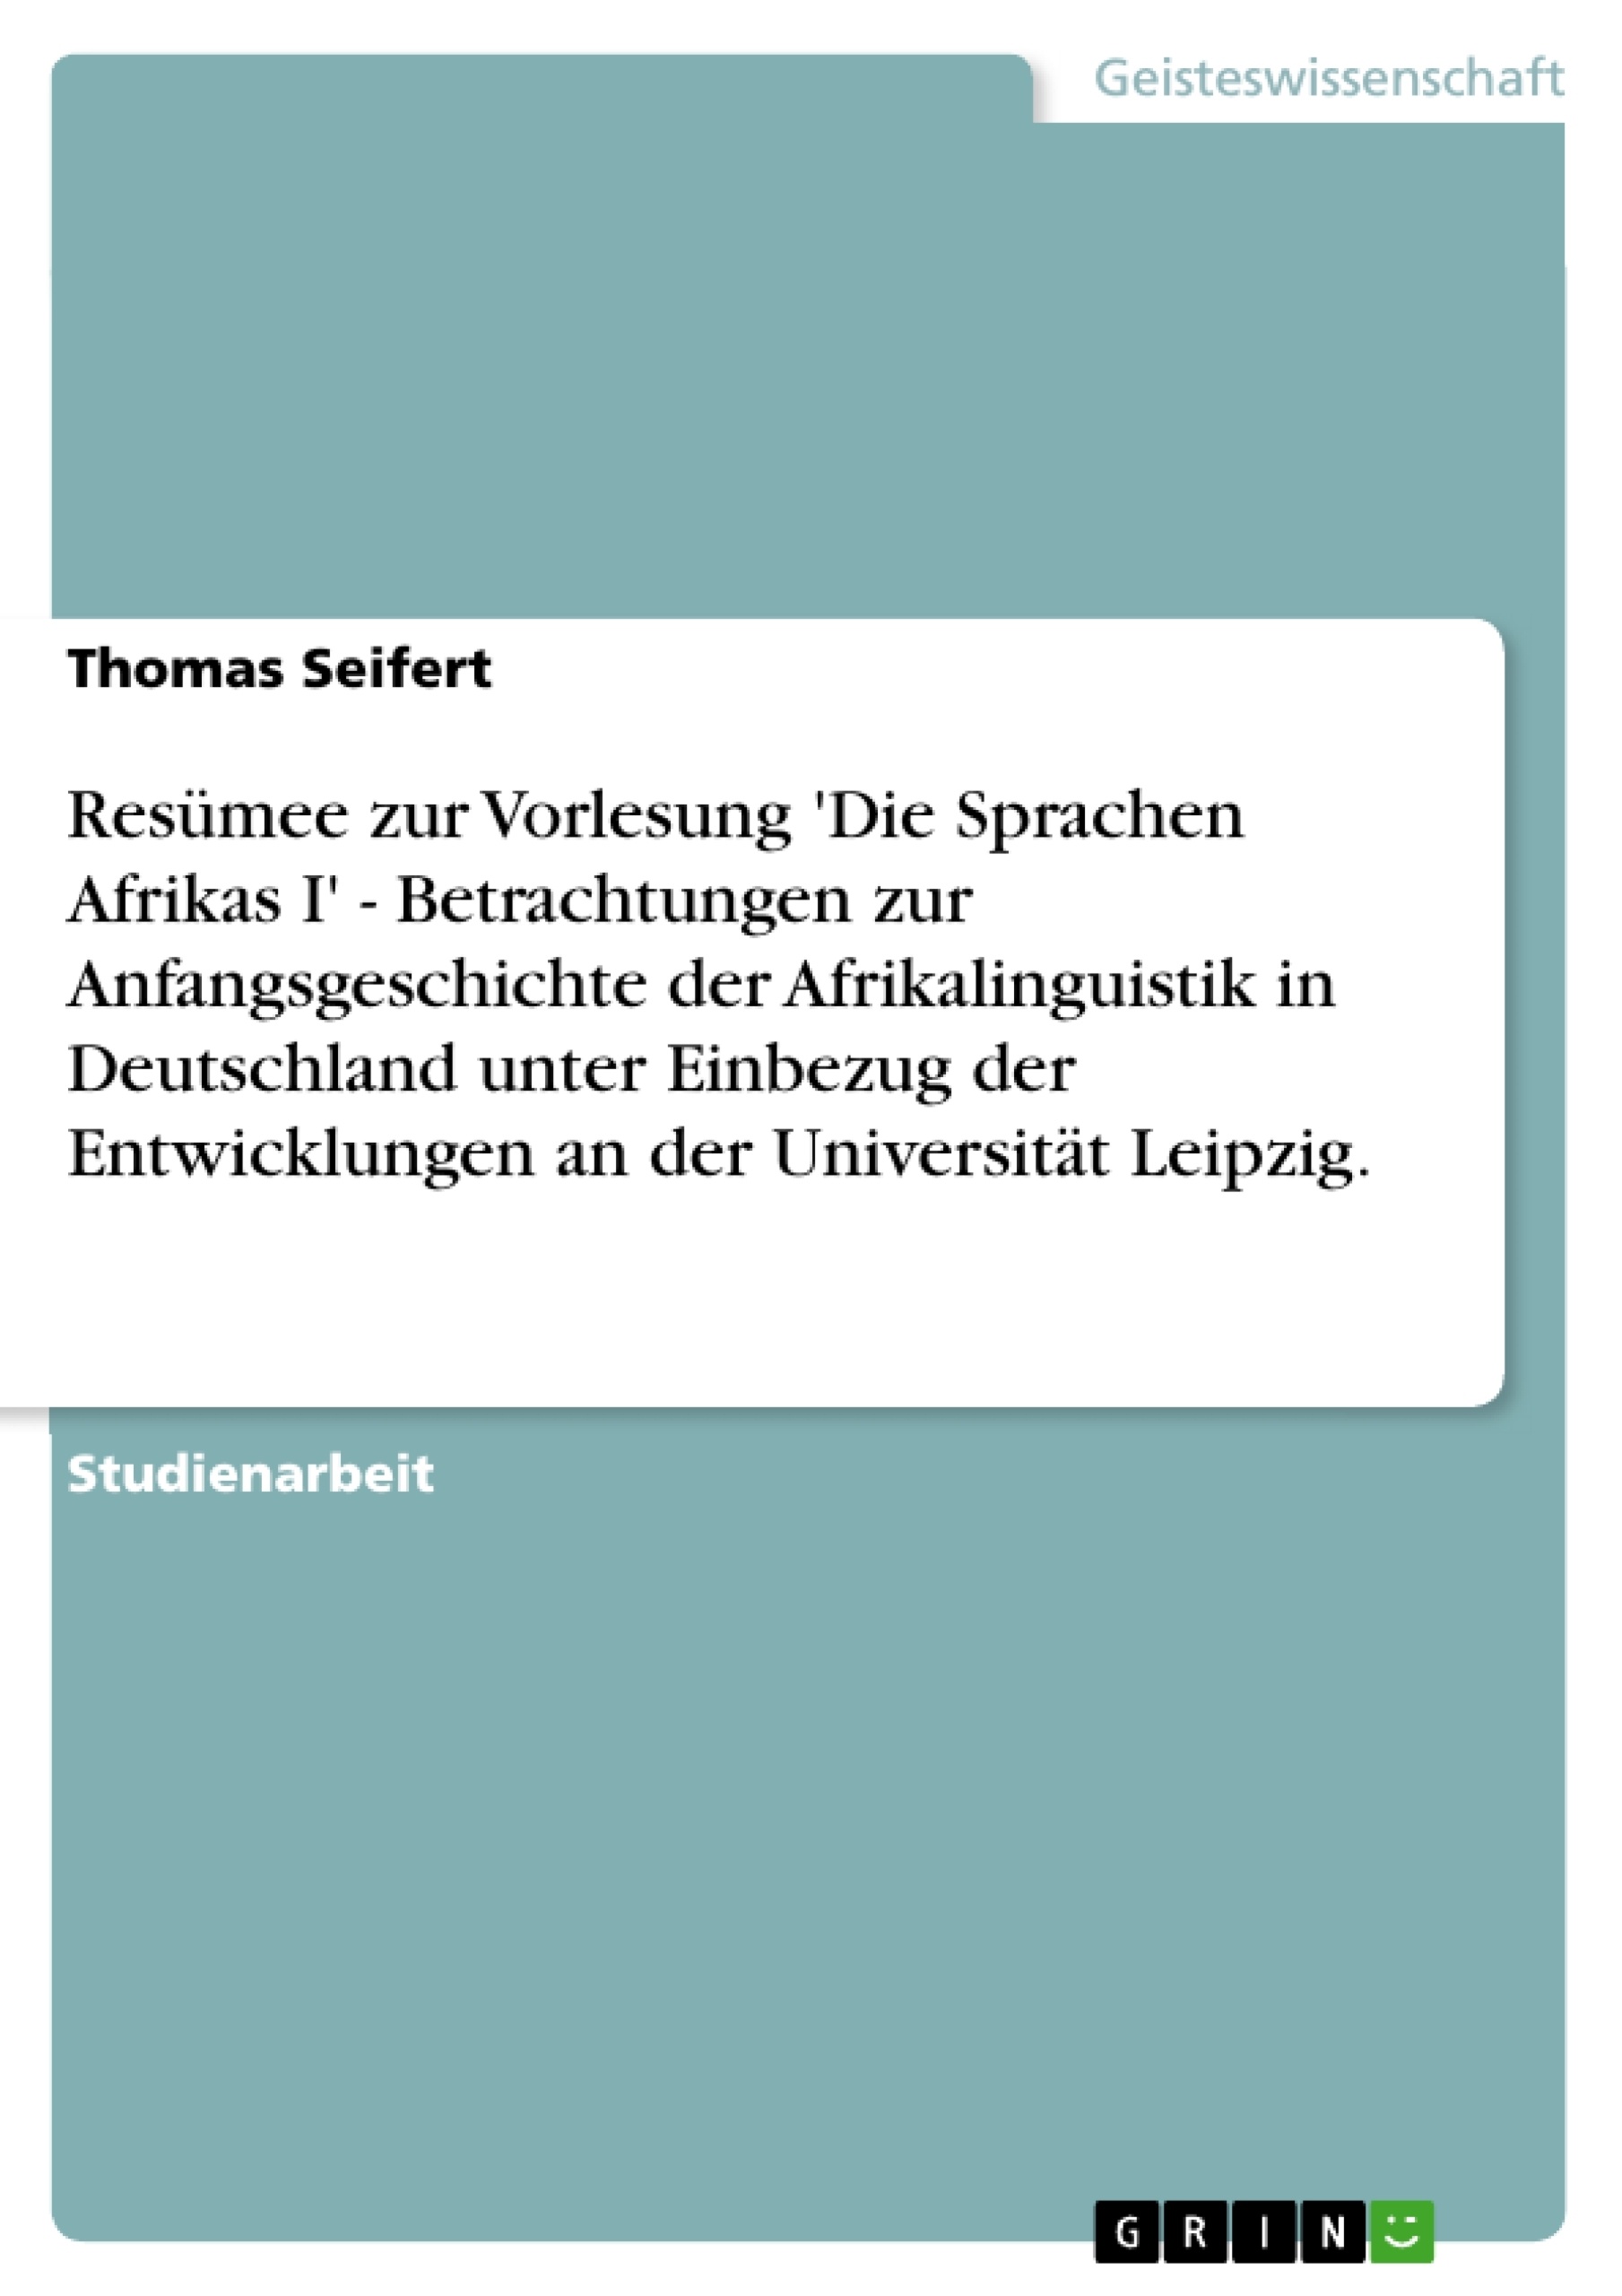 Titel: Resümee zur Vorlesung 'Die Sprachen Afrikas I' - Betrachtungen zur Anfangsgeschichte der Afrikalinguistik in Deutschland unter Einbezug der Entwicklungen an der Universität Leipzig.